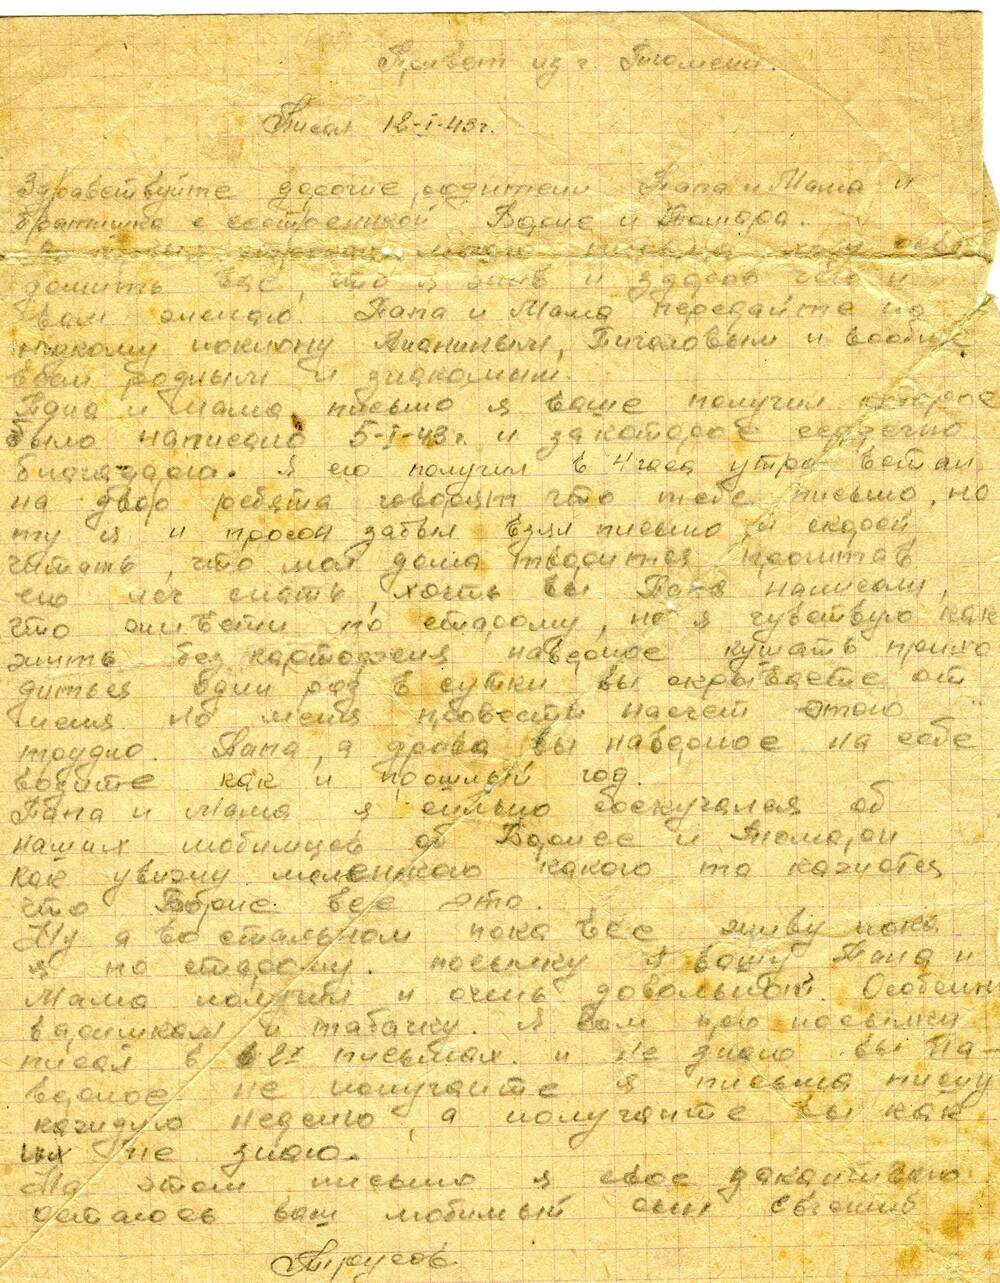 Письмо от 12.01.1943 г. из Тюмени из военного училища, адресованное Трусову П.В.